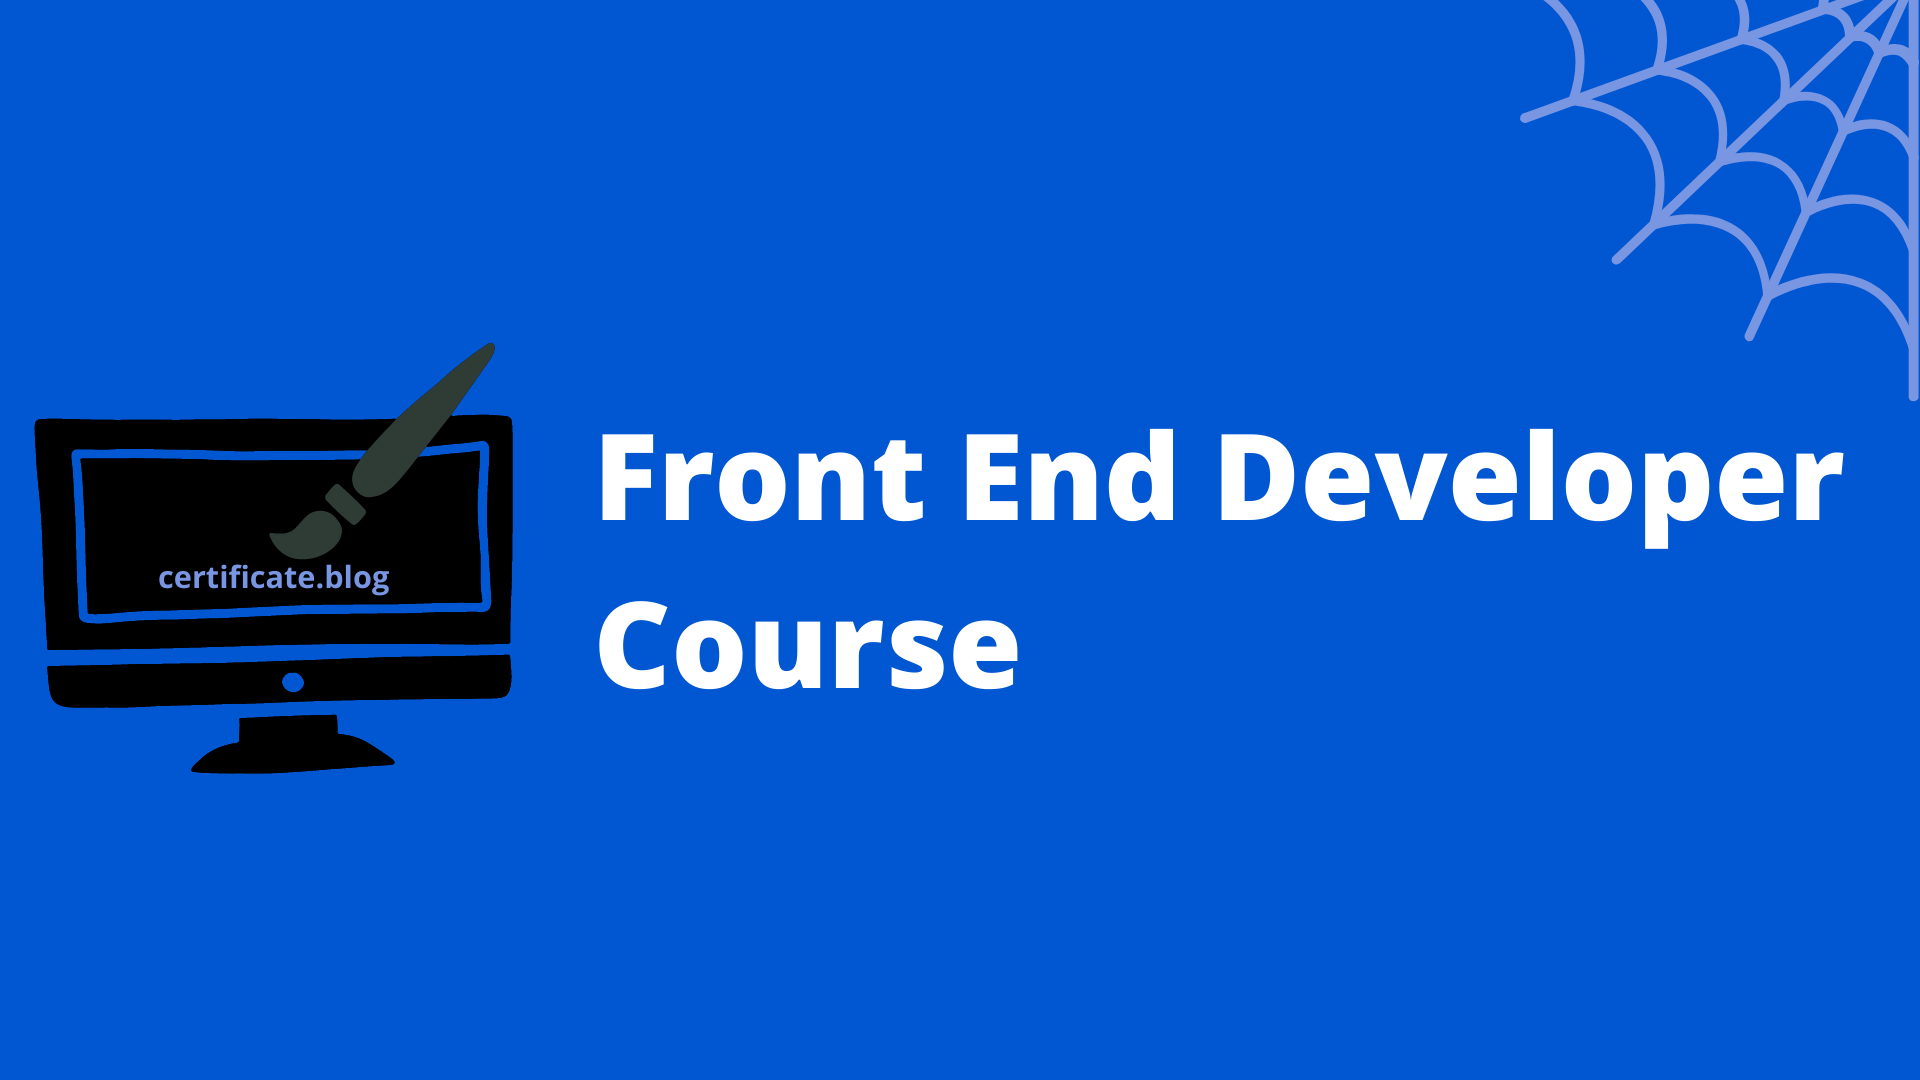 Front End Developer Course